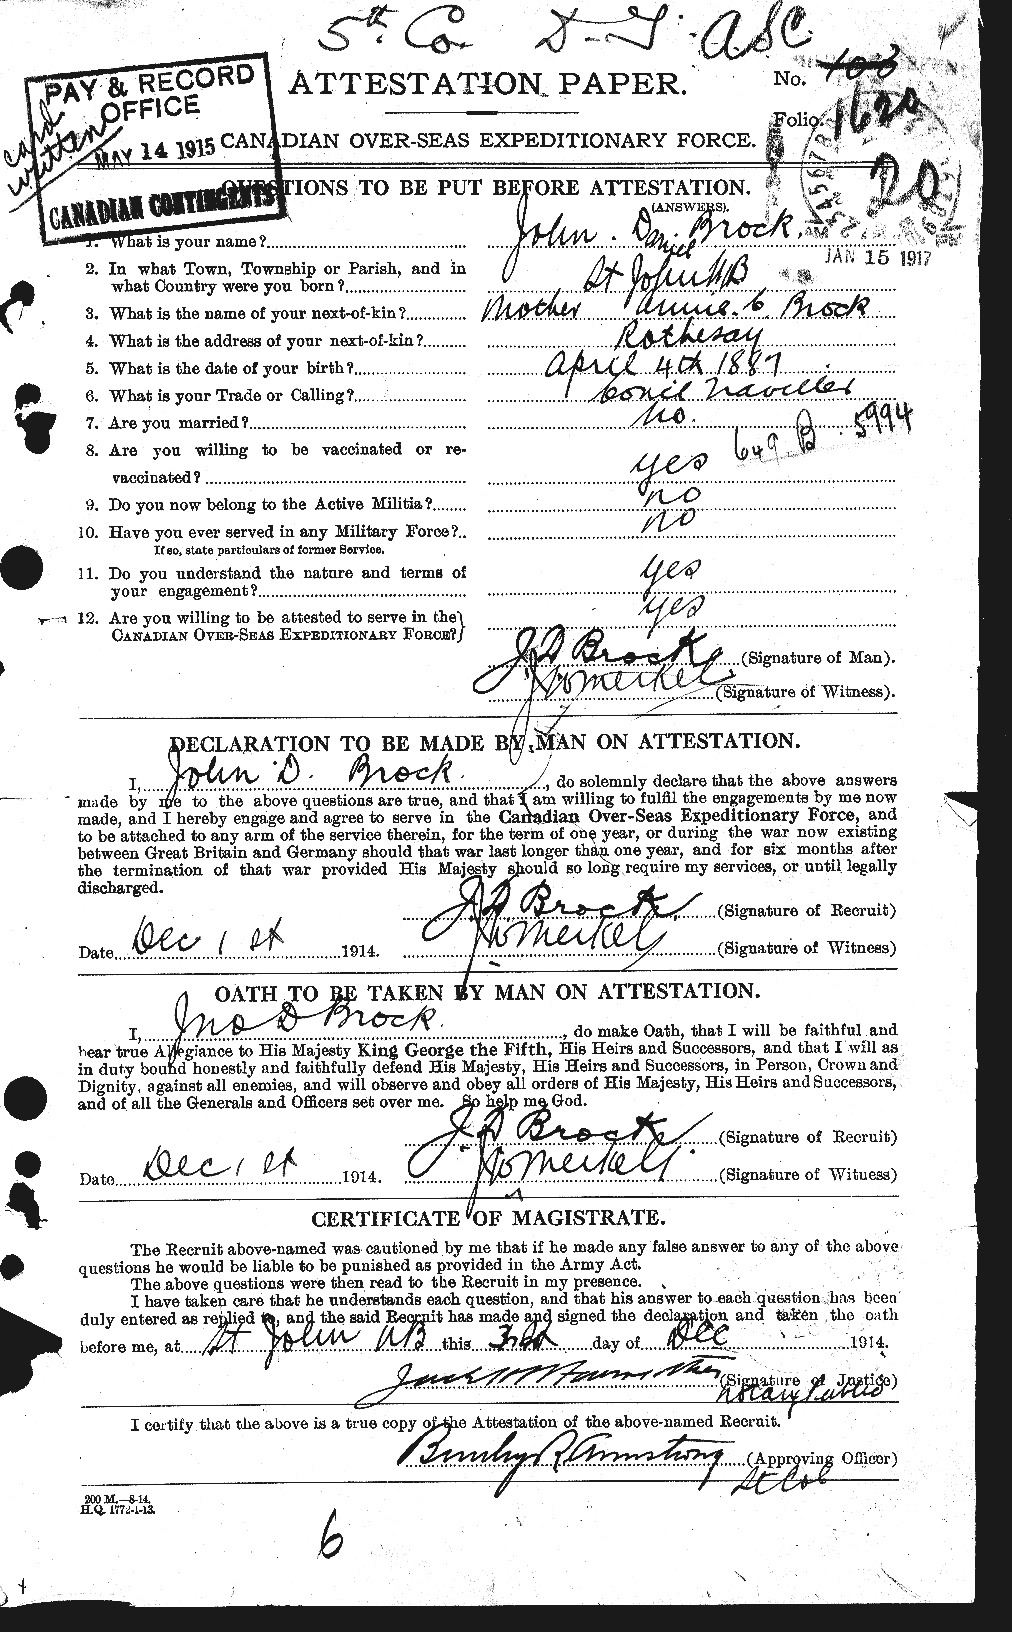 Dossiers du Personnel de la Première Guerre mondiale - CEC 258219a